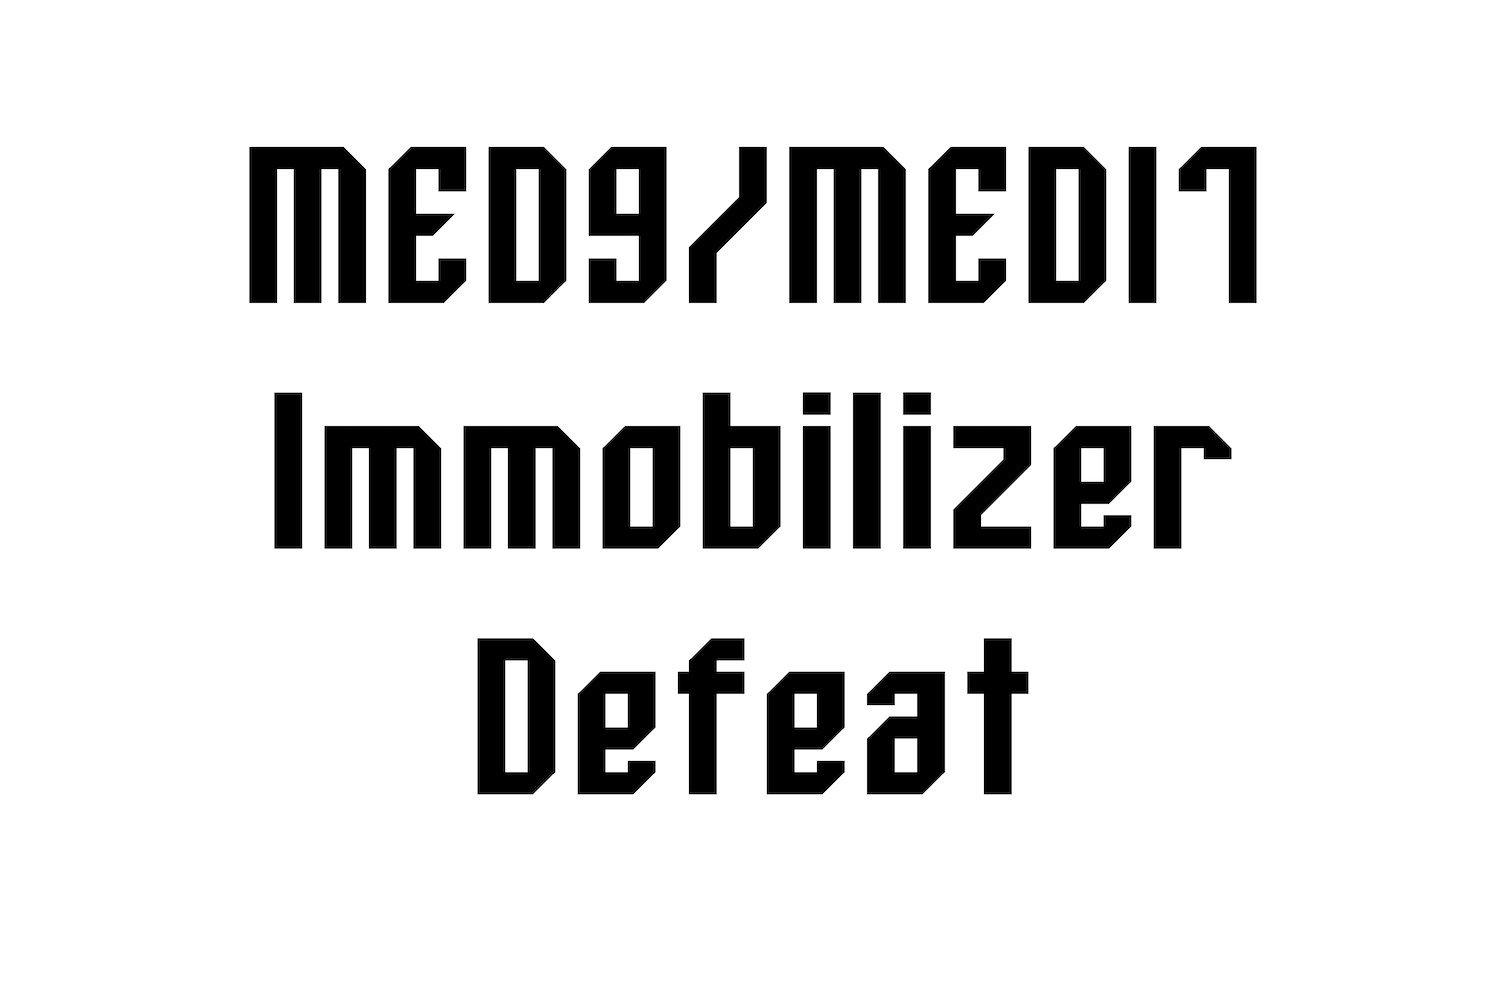 06a-technik - MED9/MED17 Immobilizer Defeat - 